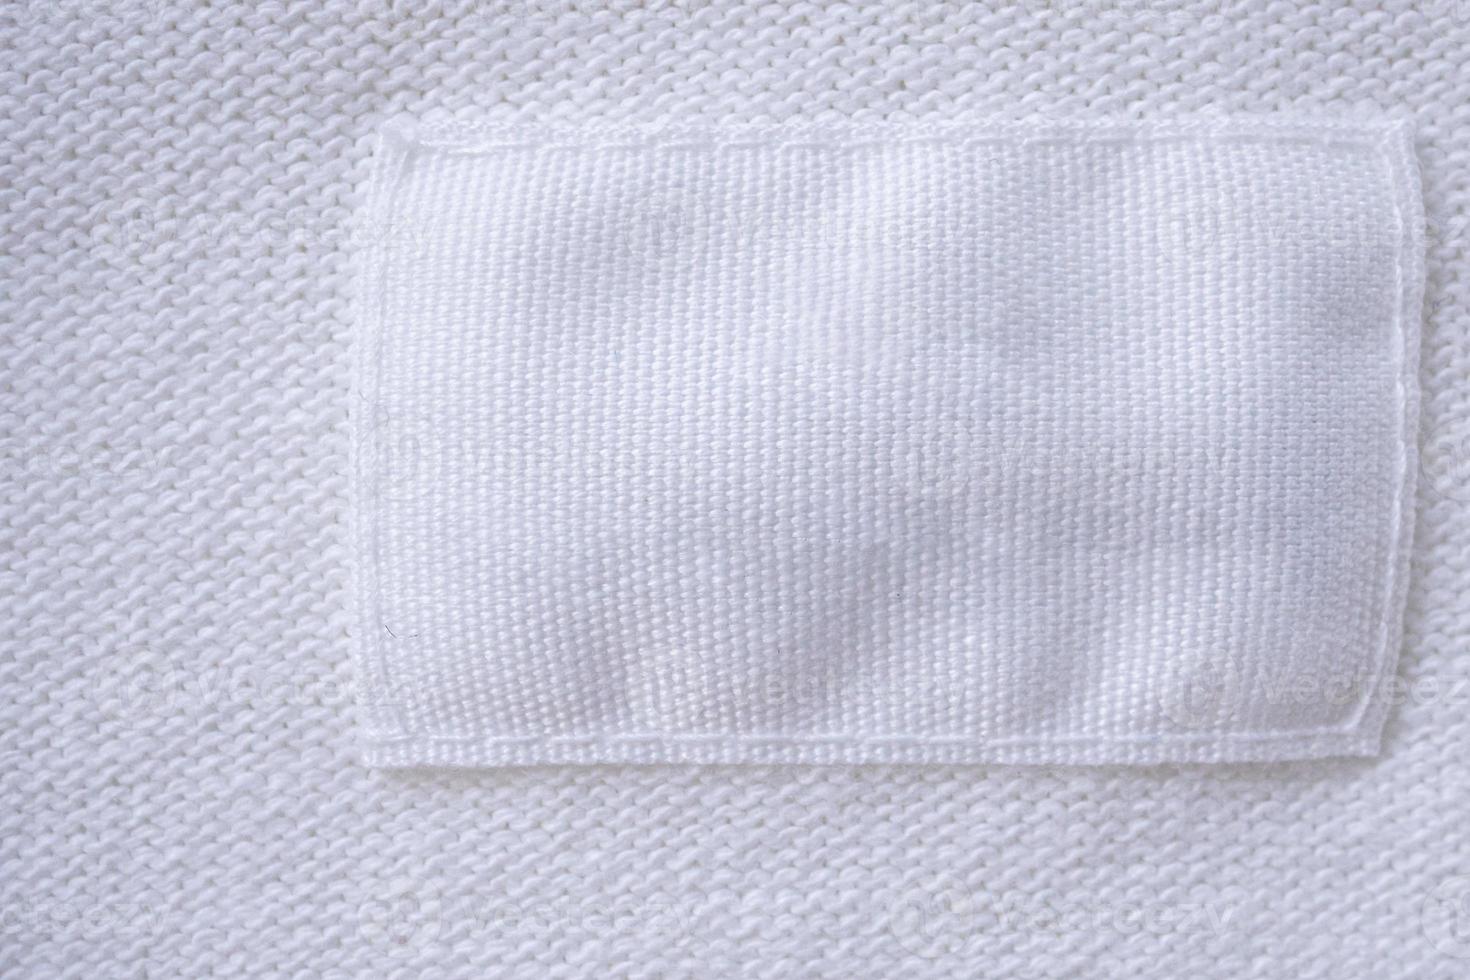 leeres weißes Kleideretikett auf neuem Hemdhintergrund foto